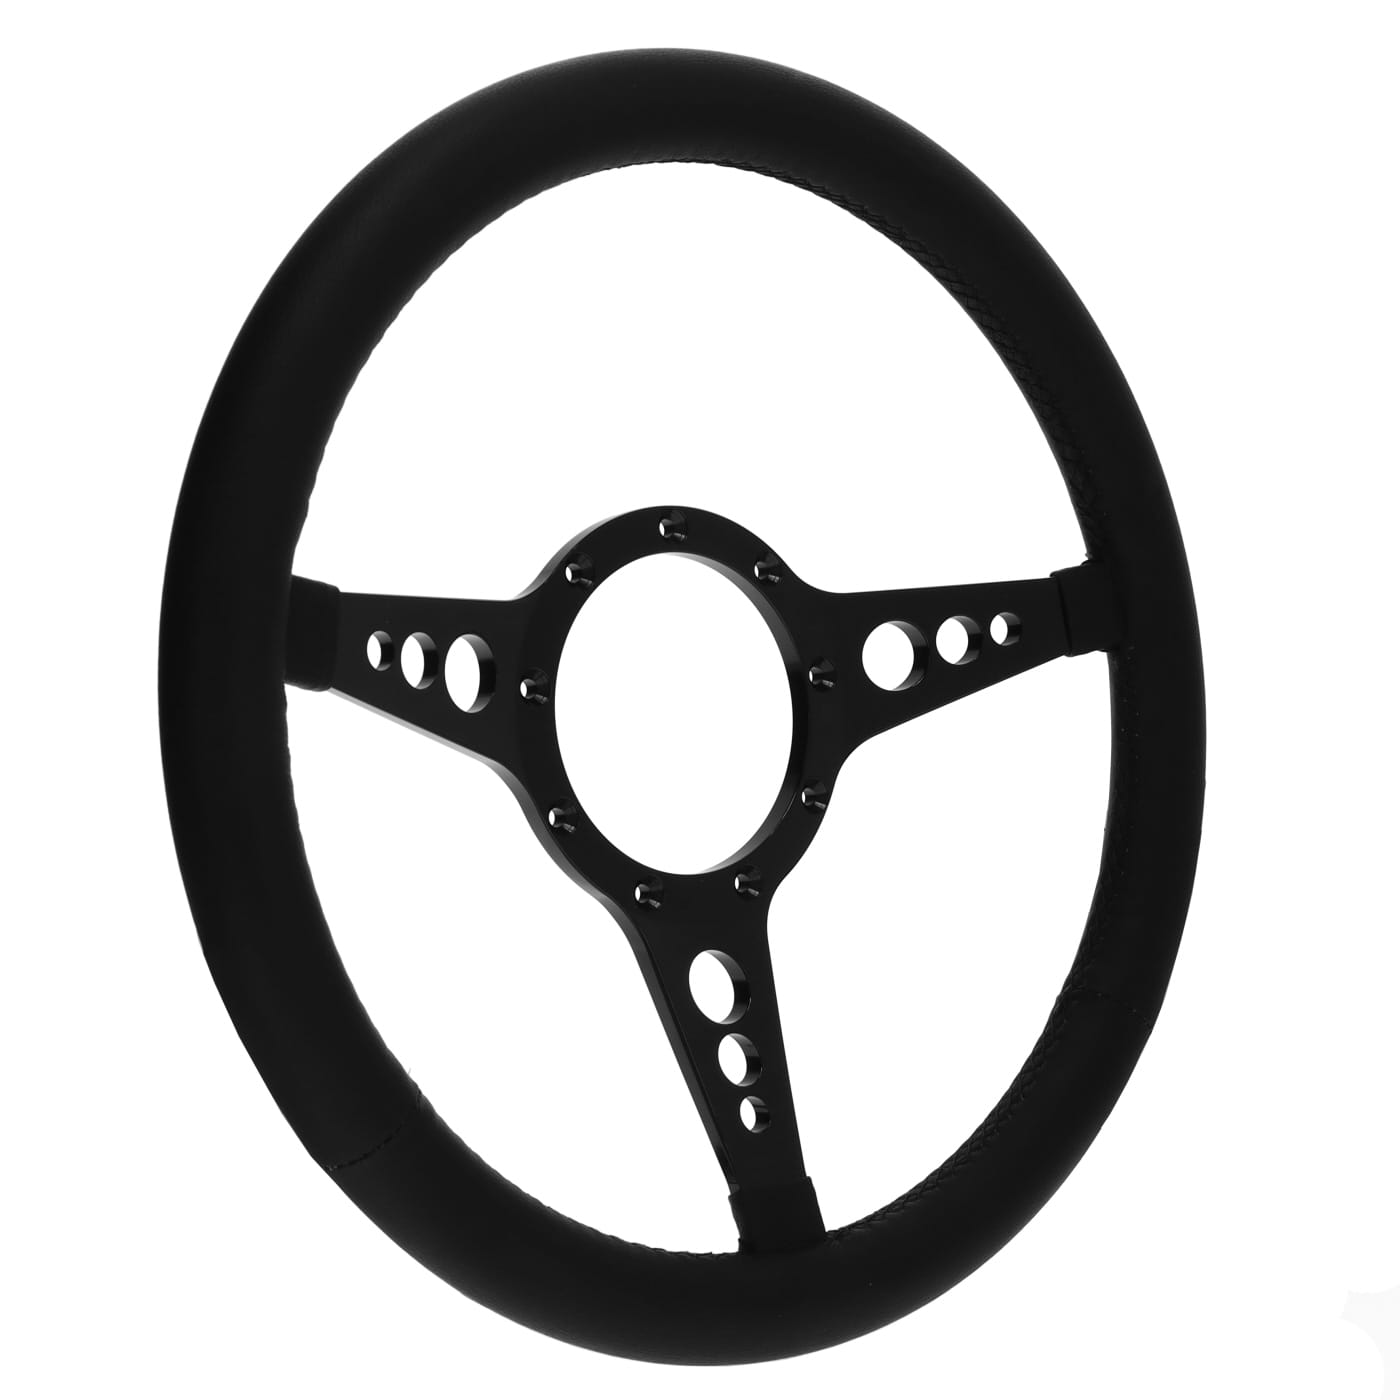 Steering Wheel Mark 8 GT Black 3 Spoke 14 Inch